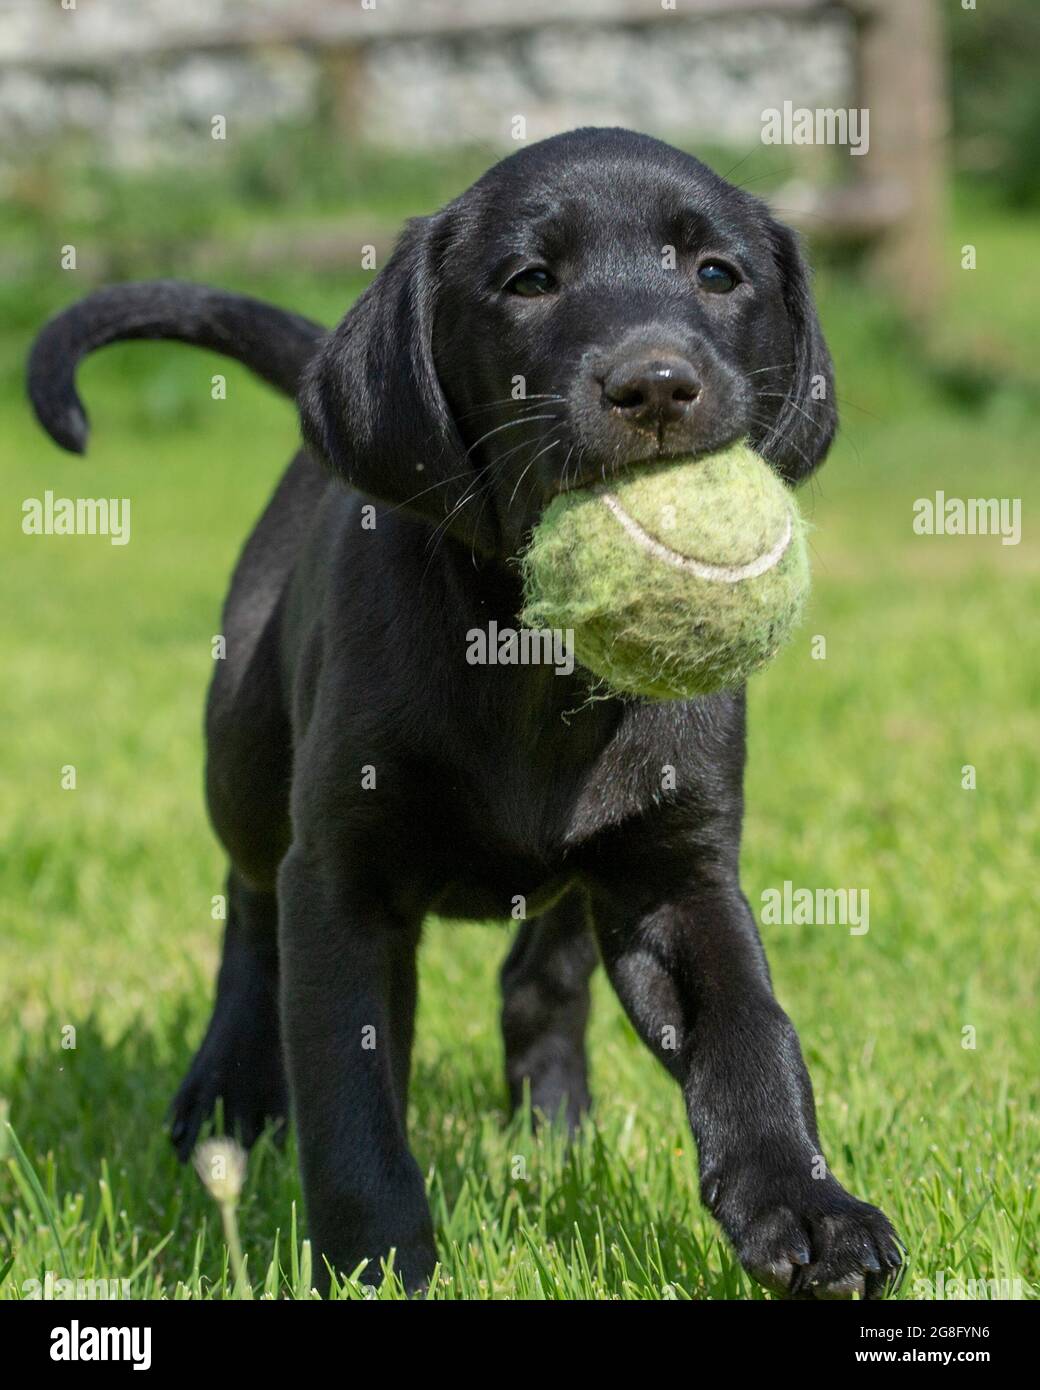 Labrador puppy carrying a tennis ball Stock Photo